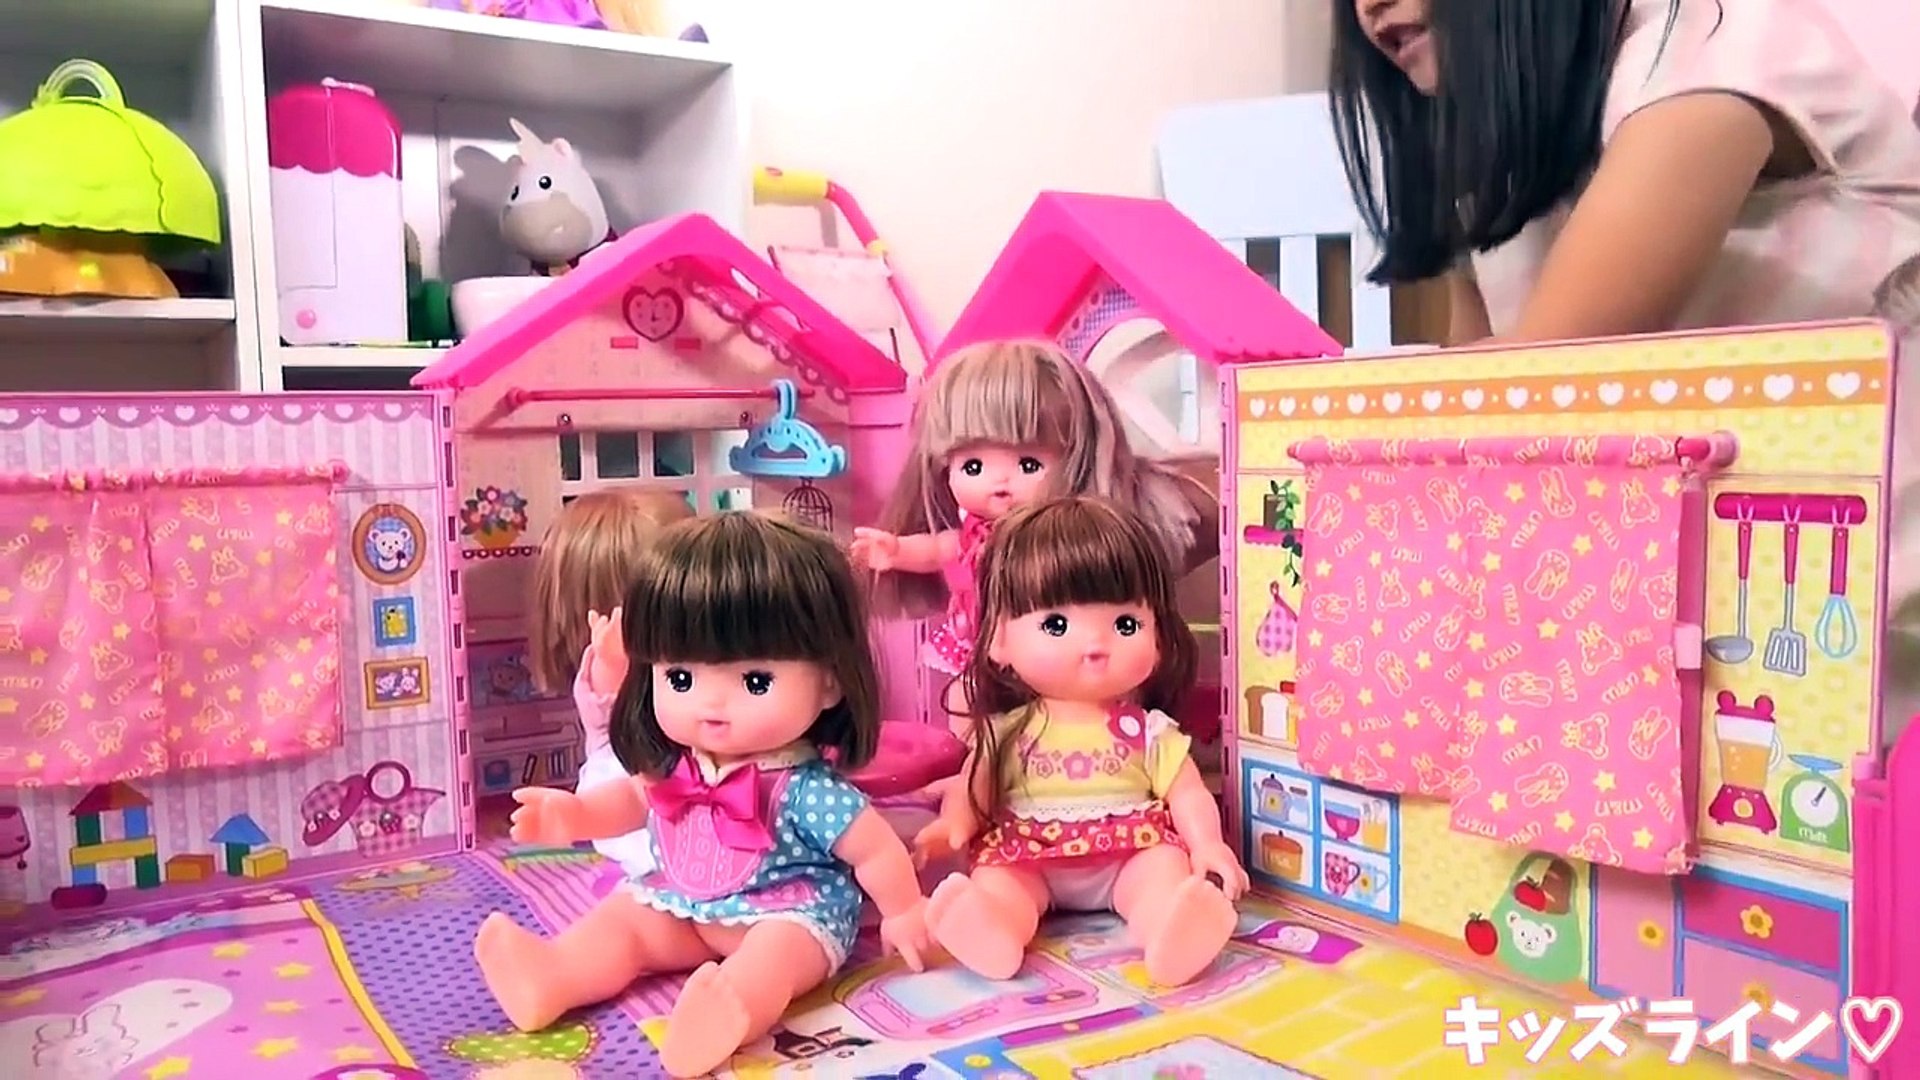 メルちゃん みんなおいでよ なかよしハウス おうち おもちゃ なかよしパーツ おままごと お家 Baby Doll Mellchan House Toy Dailymotion Video